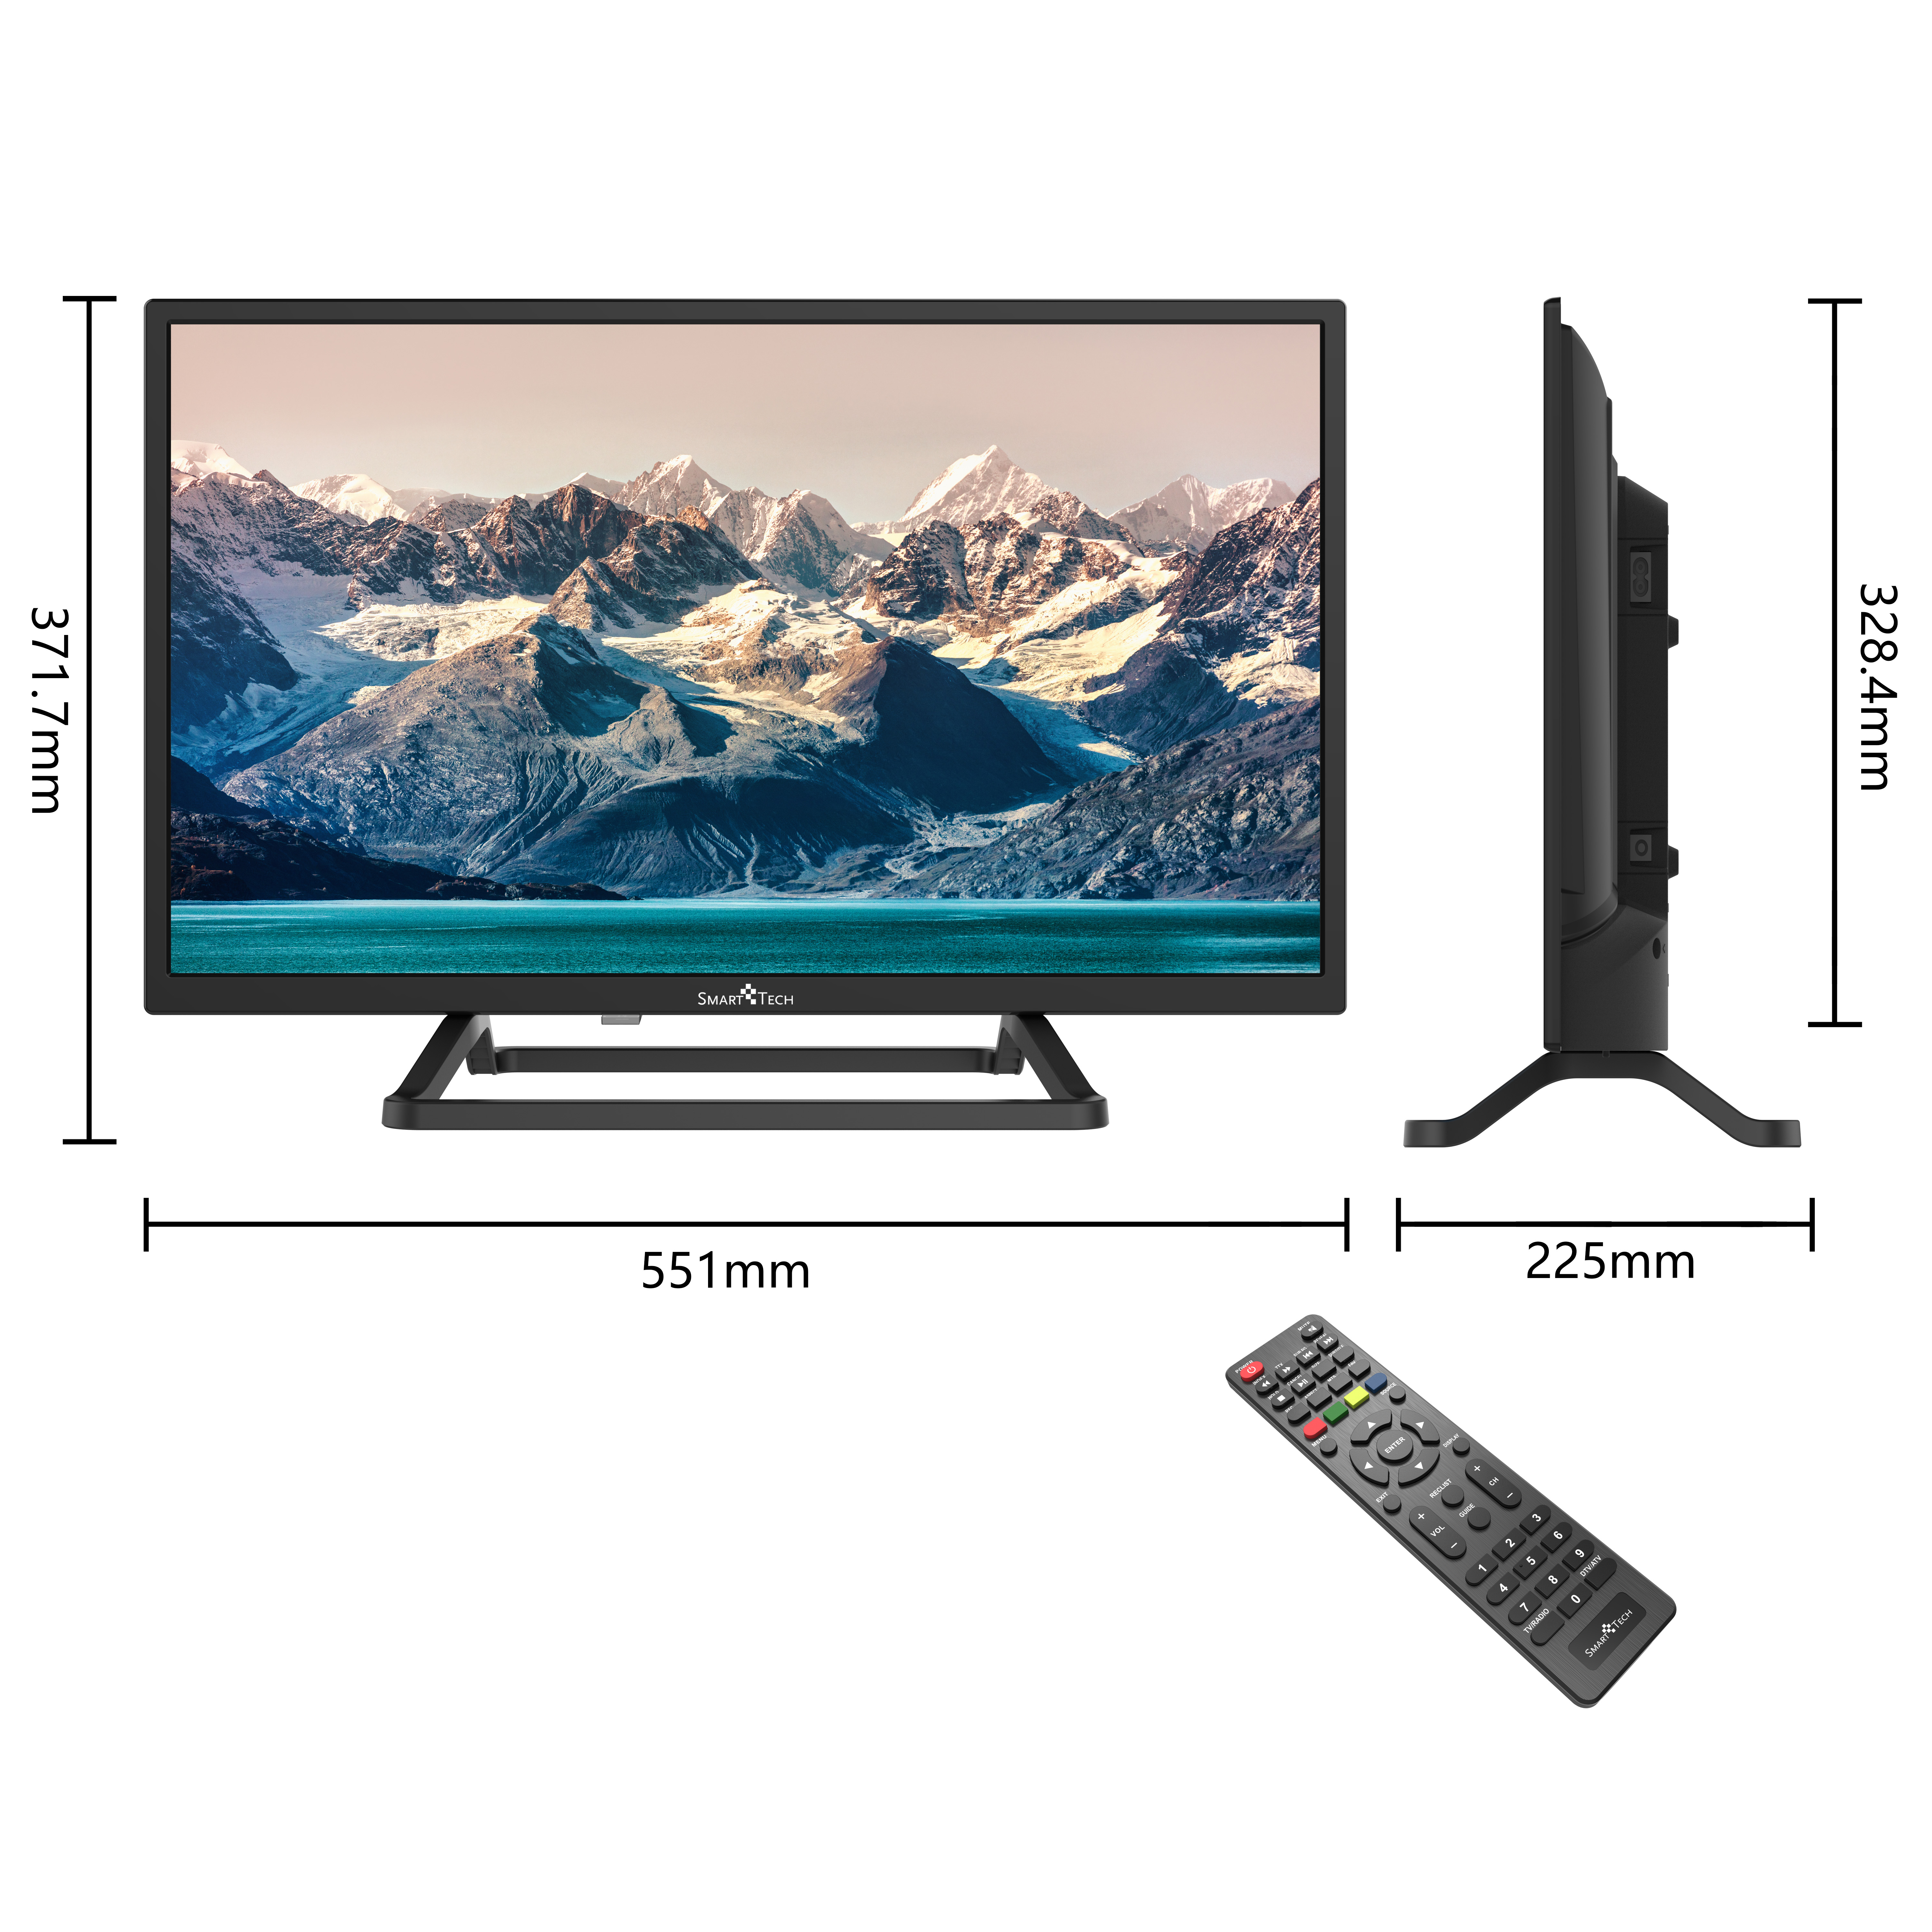 SMART TECH Zoll TV HD-ready) / LED TV 24HN10T3 60 24 Zoll Smart cm, (Flat, 24 Non